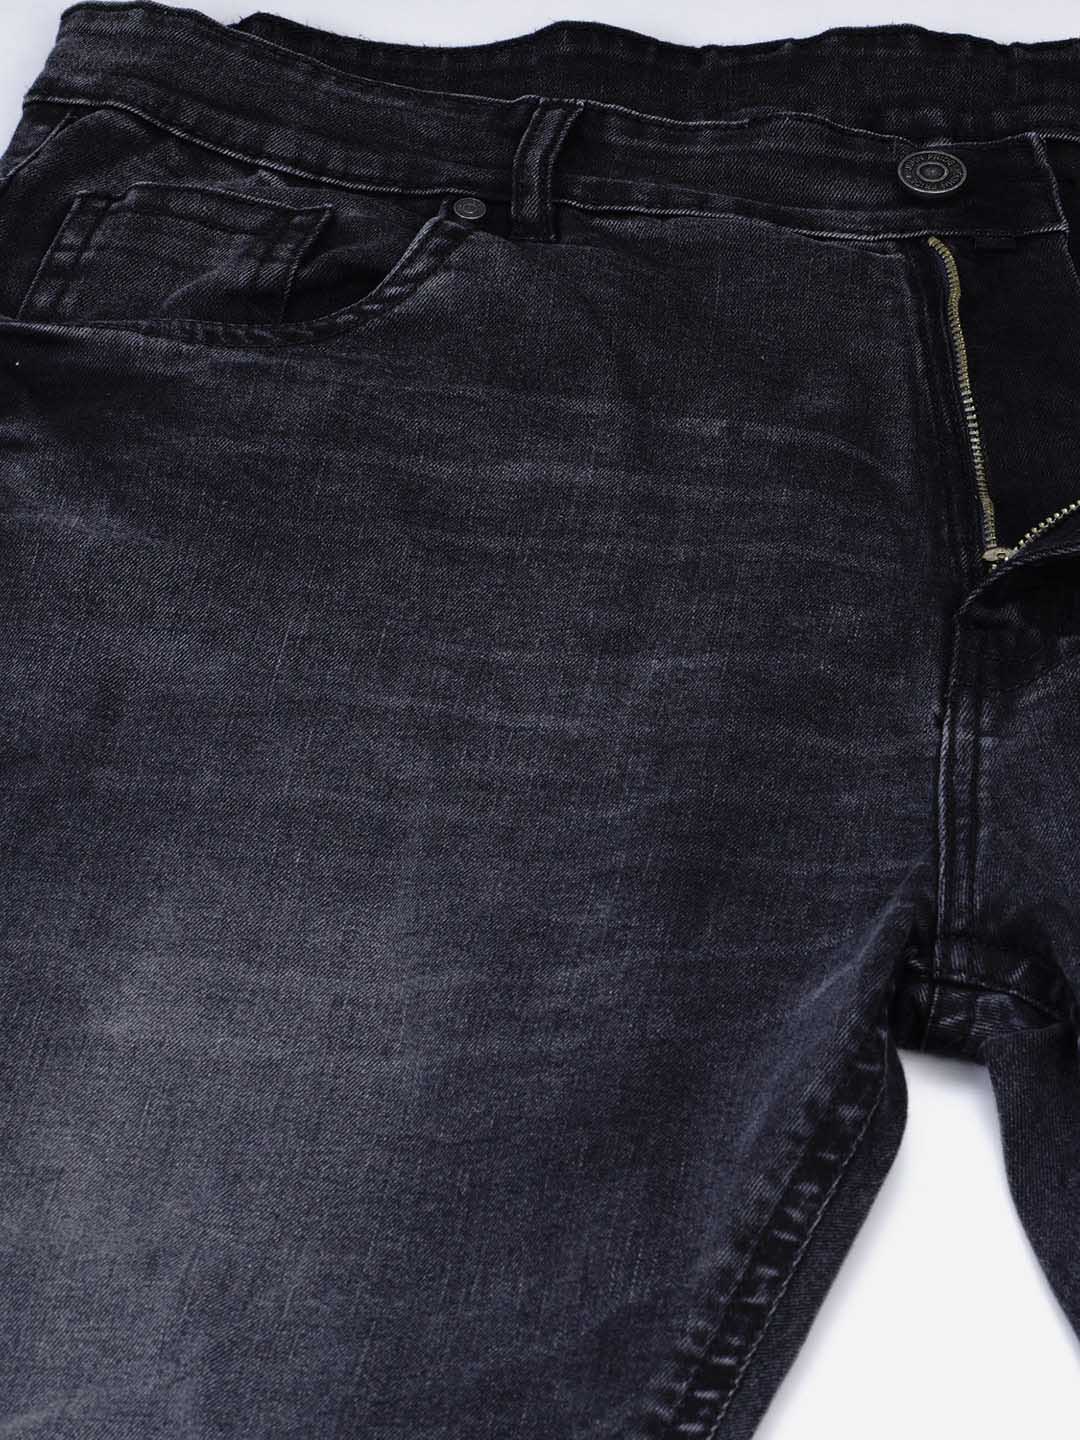 bottomwear/jeans/JPJ12125/jpj12125-3.jpg